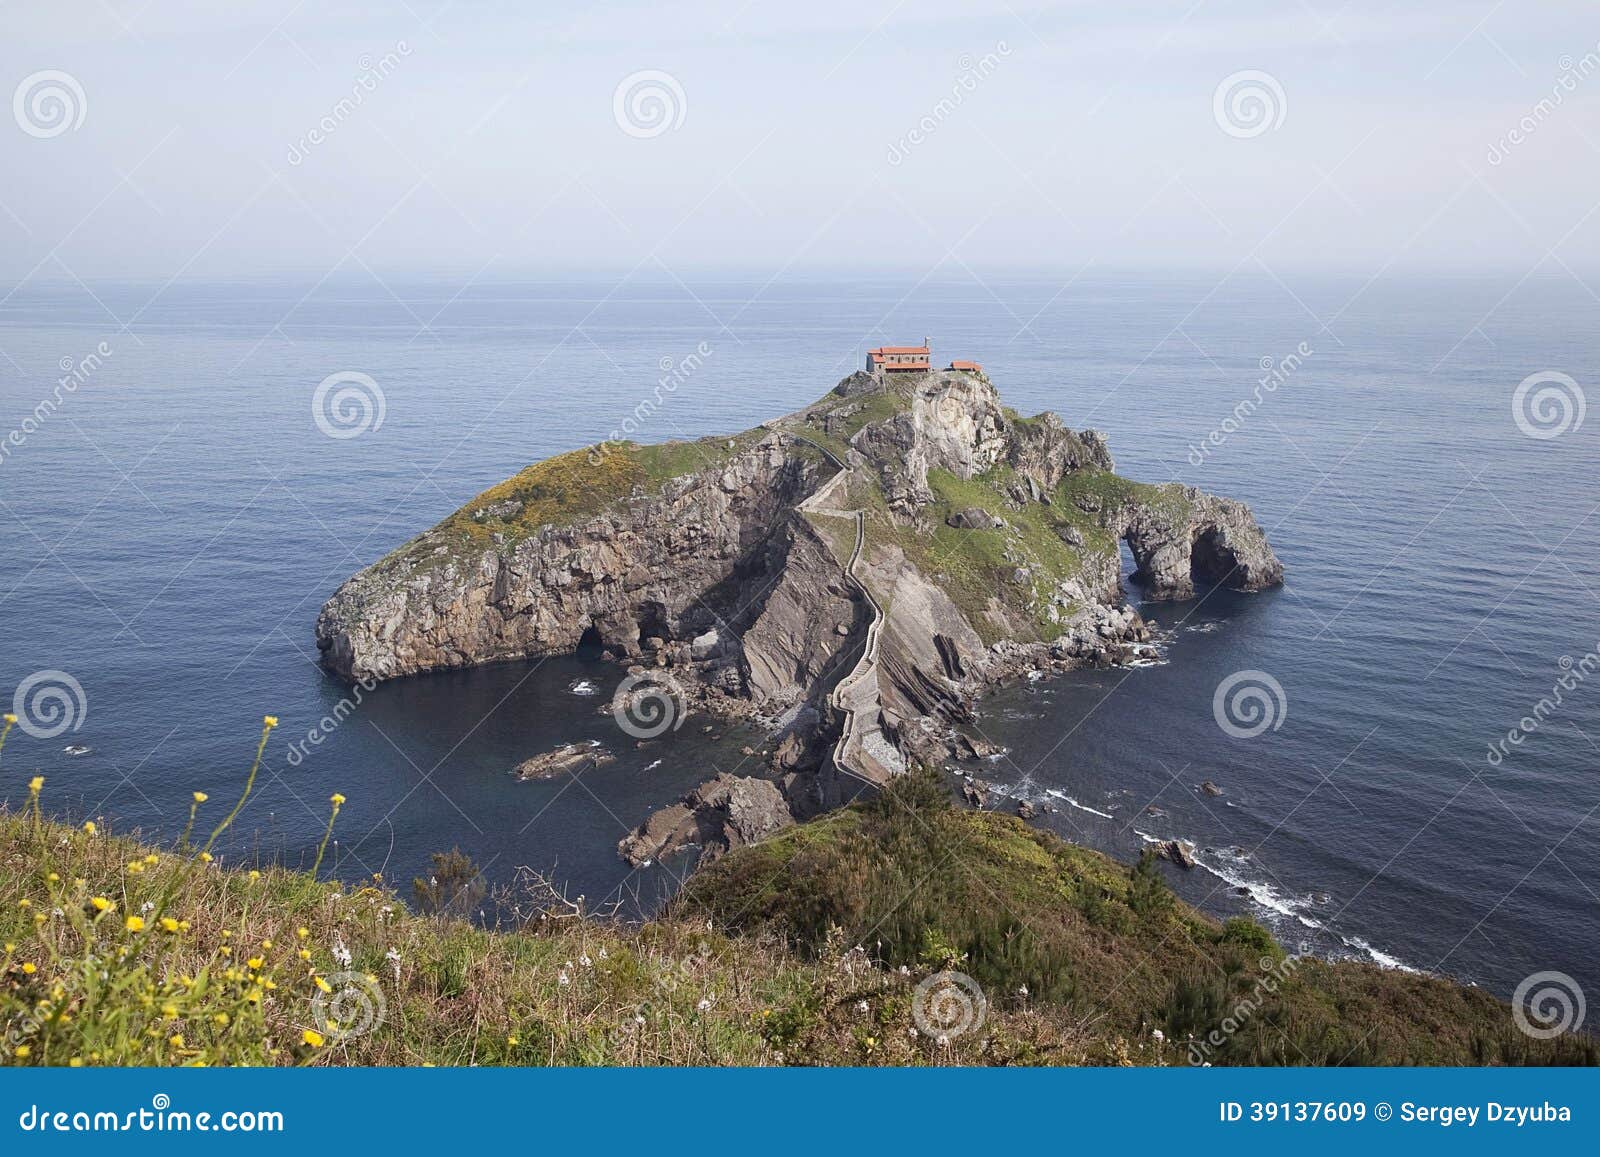 island gaztelugatxe on the coast of biscay